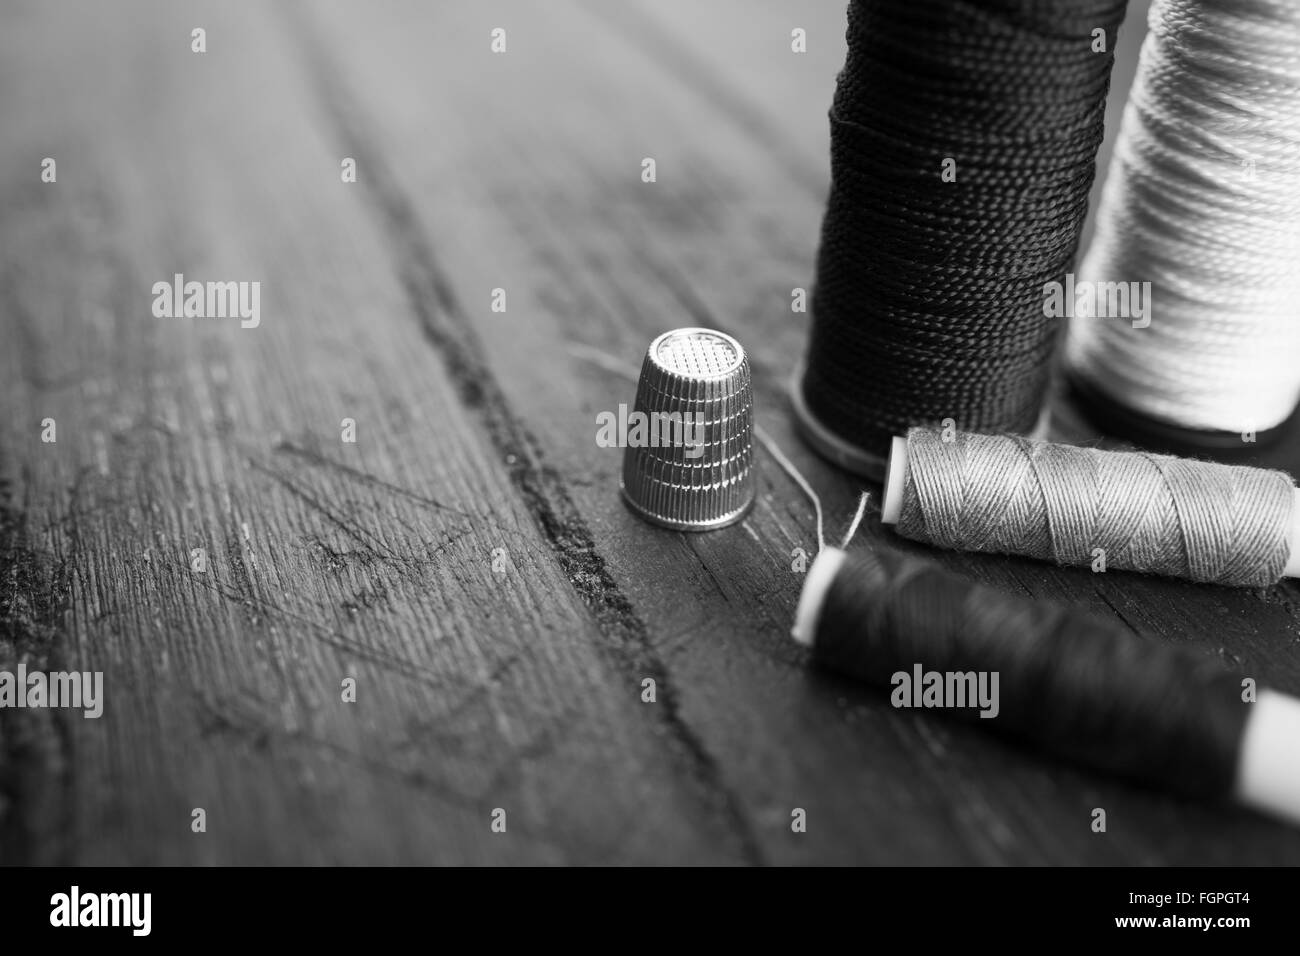 Nähen Zubehör: Spulen Faden, Nadel, Fingerhut auf Holztisch. Schwarz / weiß Foto. Schneidern und Nähen Konzept. Stockfoto